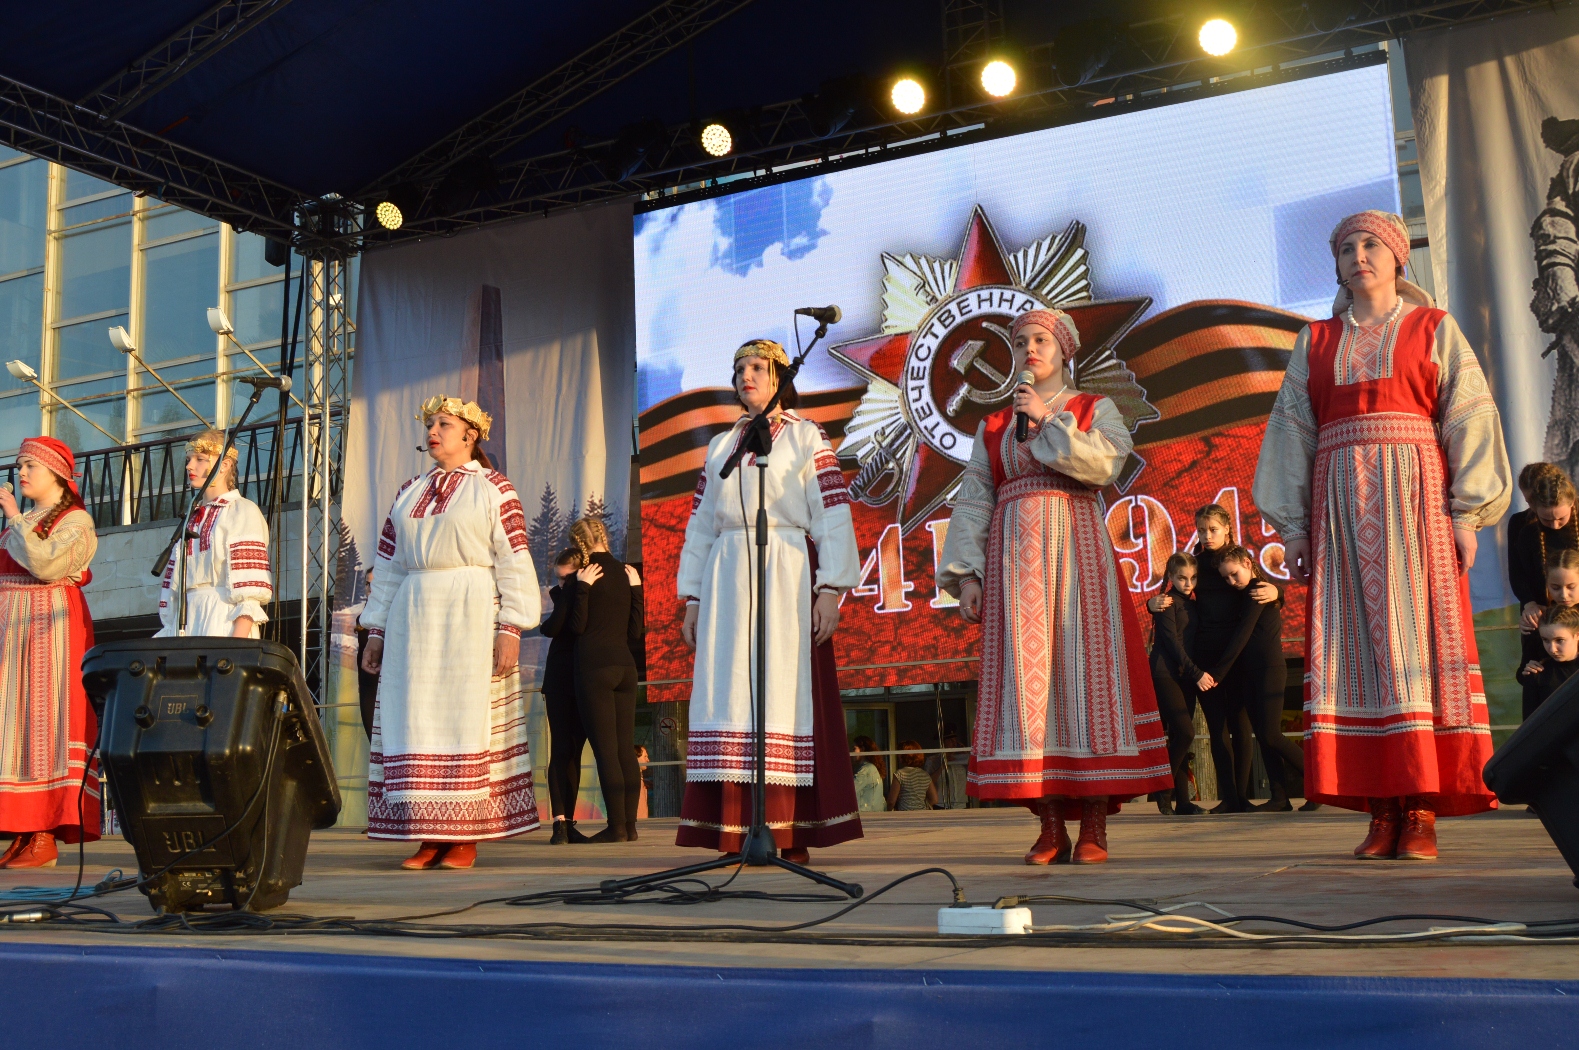 Солнечный праздничный май в Тольятти с белорусским колоритом